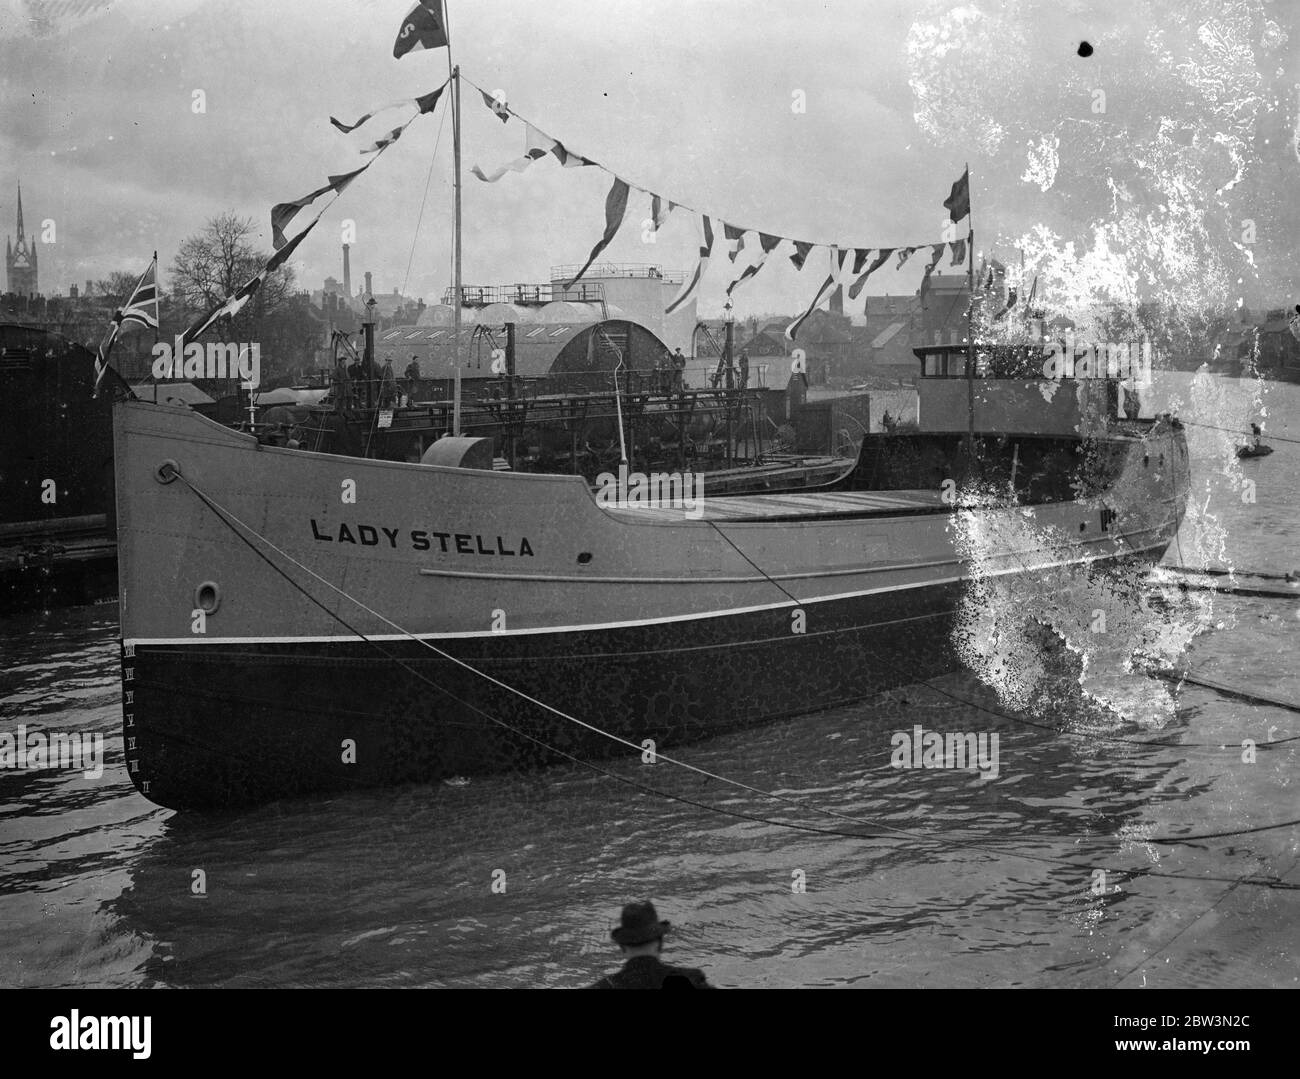 260 Tonnen Motorschiff startete Breitseite in Faversham . Die Lady Stalls, eine 260 Tonnen Fracht Kapazität Motorachterbahn, wurde breitseitig in einen Bach bei Faversham, Kent gestartet. Die Werft von Messrs. James Pollock, Sons and Co, ltd, ist eine der wenigen übrig gebliegenden Werften Großbritanniens, wo die breitseitige Metho der Abschussung noch herrscht. Foto zeigt, die Lady Stella nimmt das Wasser Breitseite mit einem mächtigen Spritzer. 30. November 1935 Stockfoto